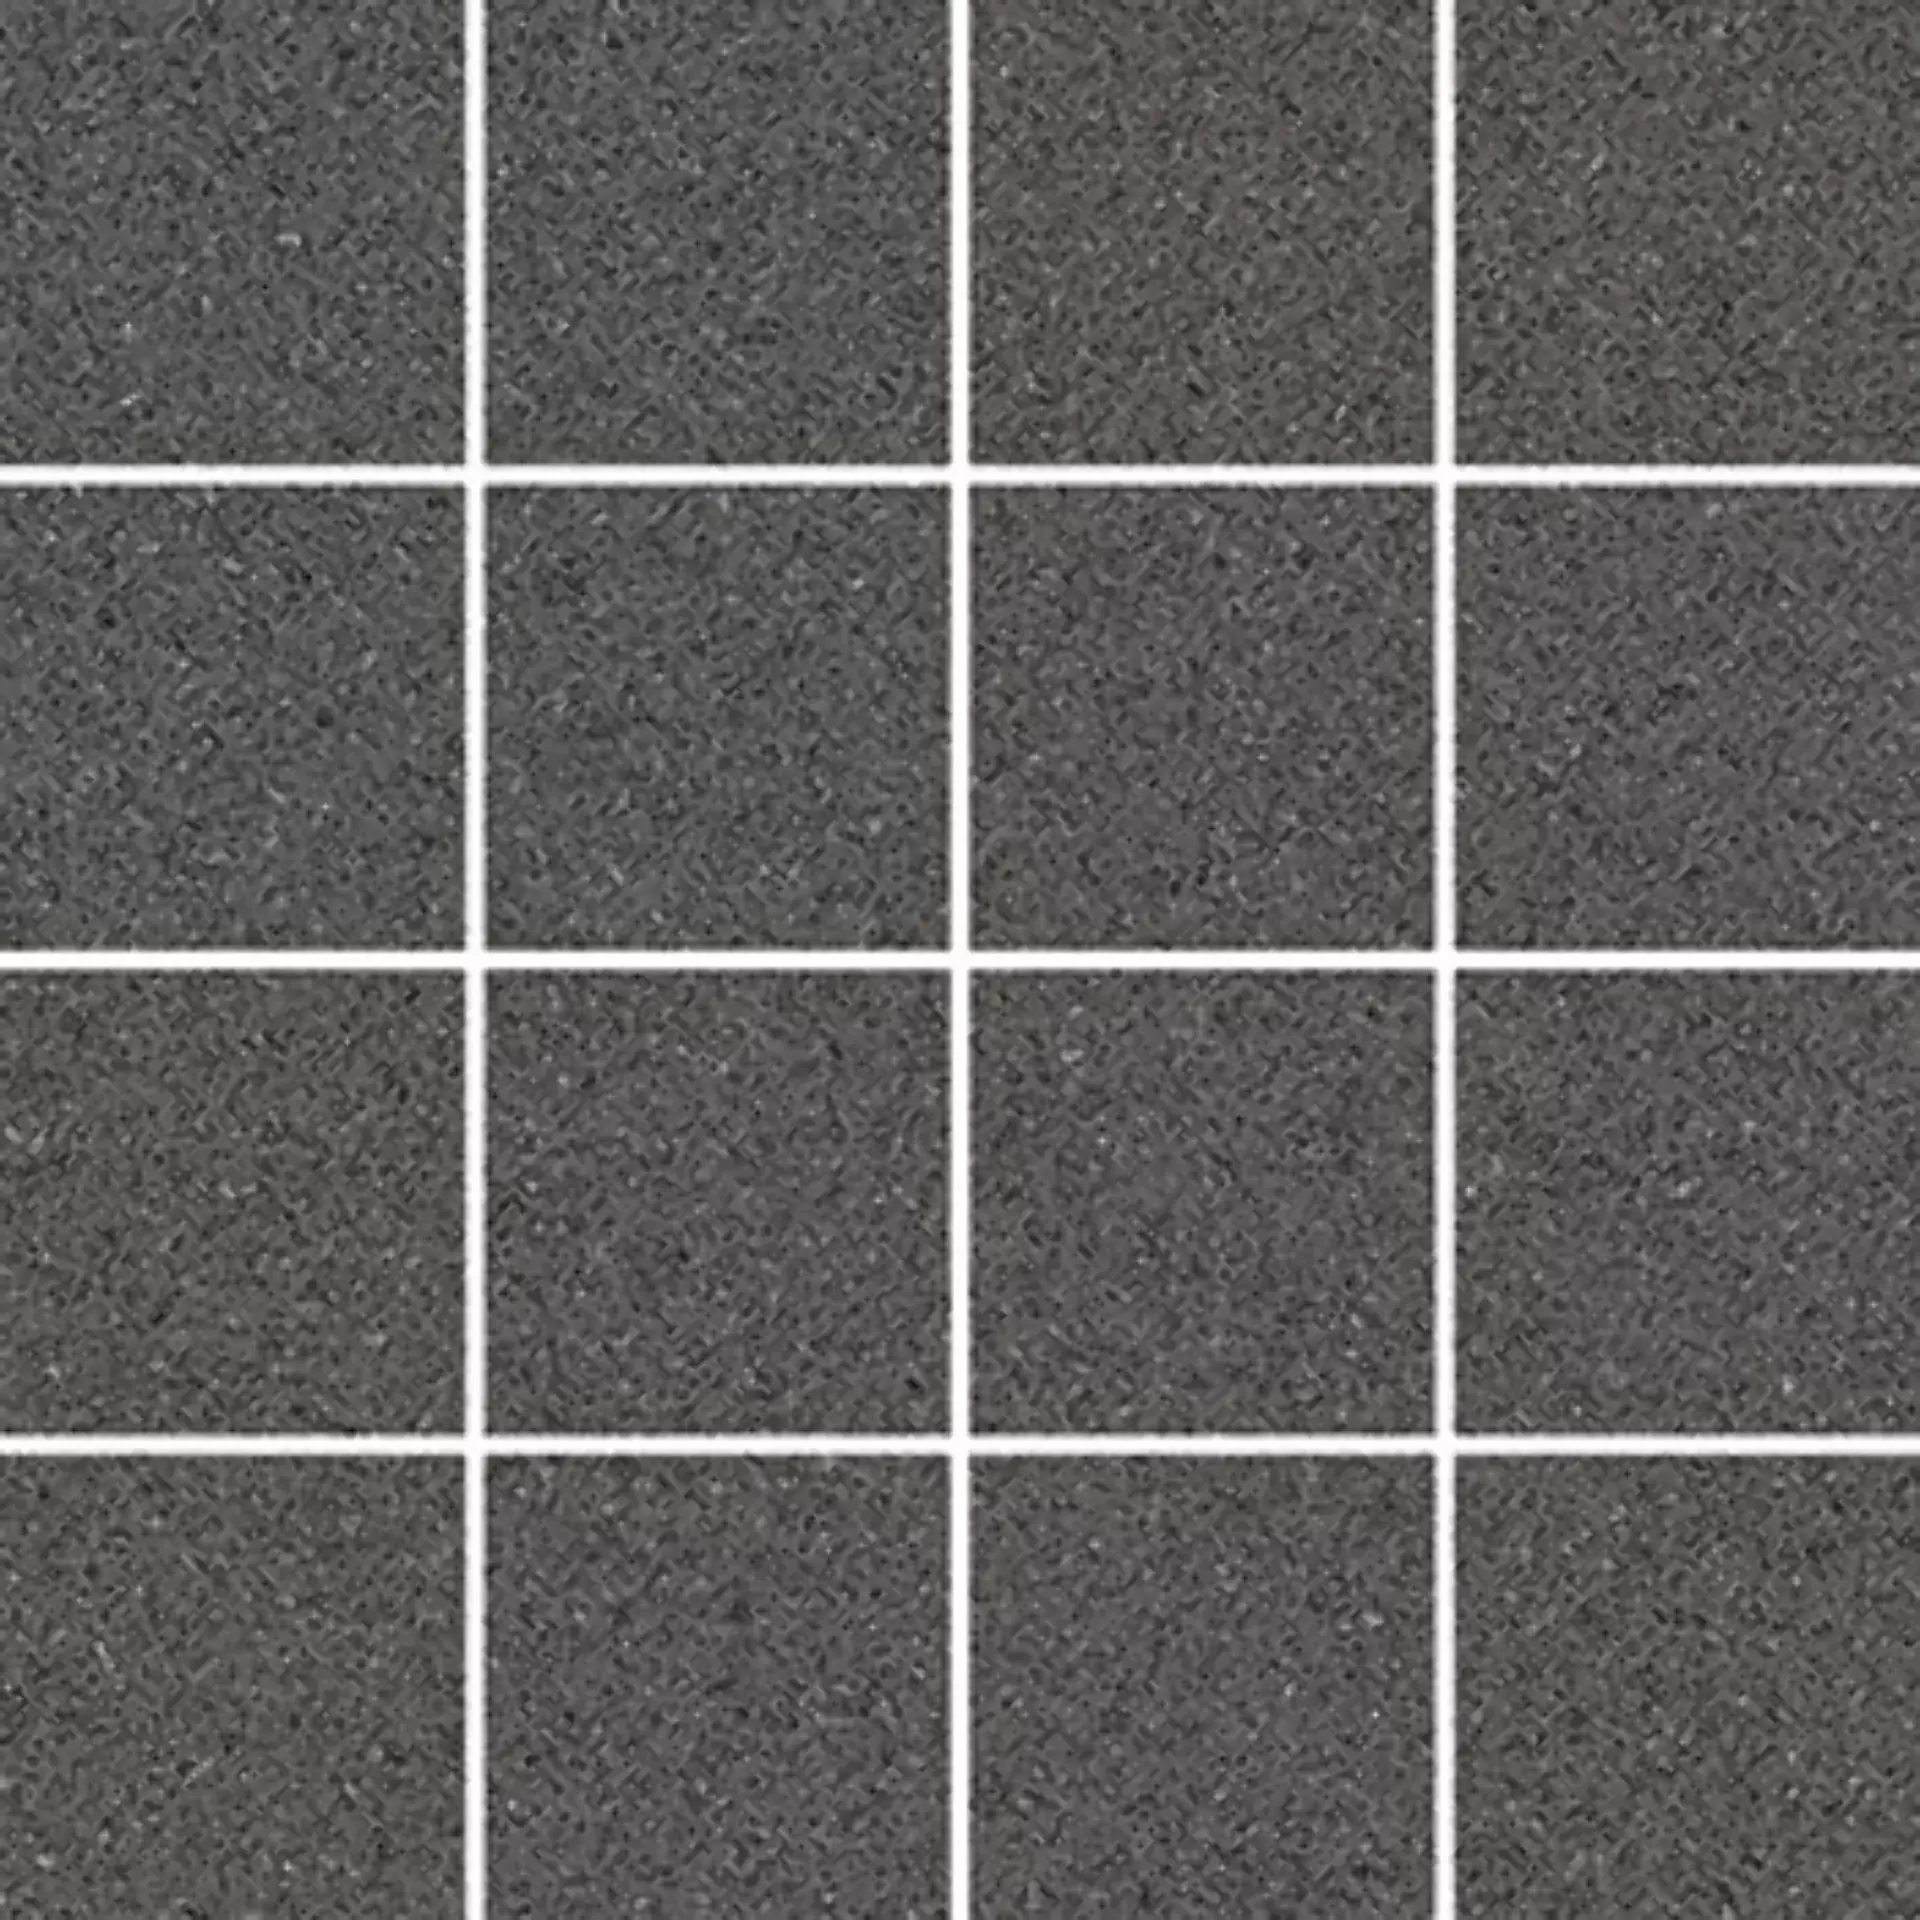 Wandfliese,Bodenfliese Villeroy & Boch Pure Line 2.0 Asphalt Grey Matt Asphalt Grey 2013-UL90 matt 7,5x7,5cm Mosaik (7,5x7,5) rektifiziert 12mm